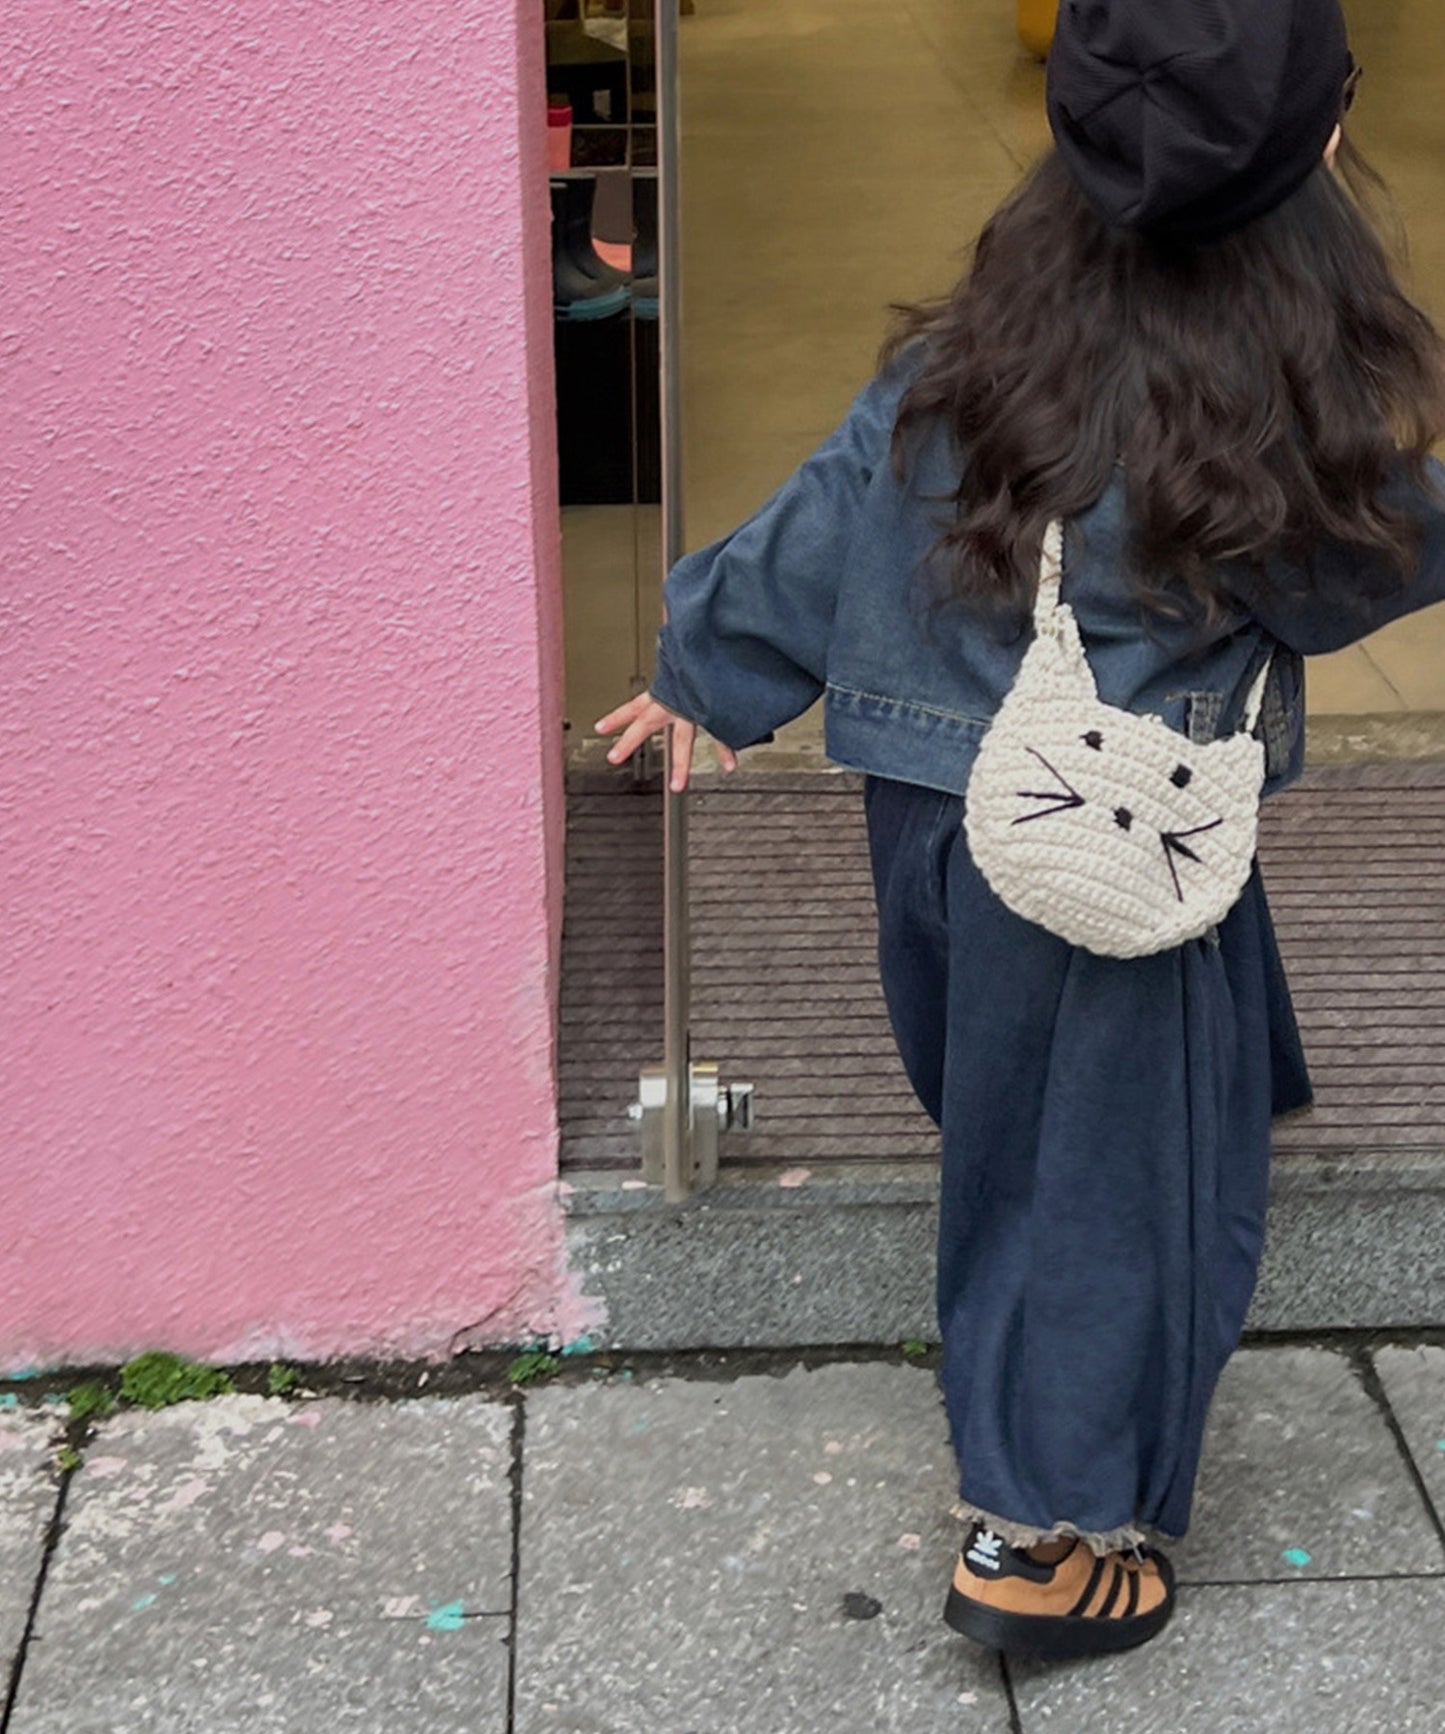 【aimoha-KIDS-】韓国子供服 かわいいフェイクパールハンドル猫ニット編みハンドバッグ